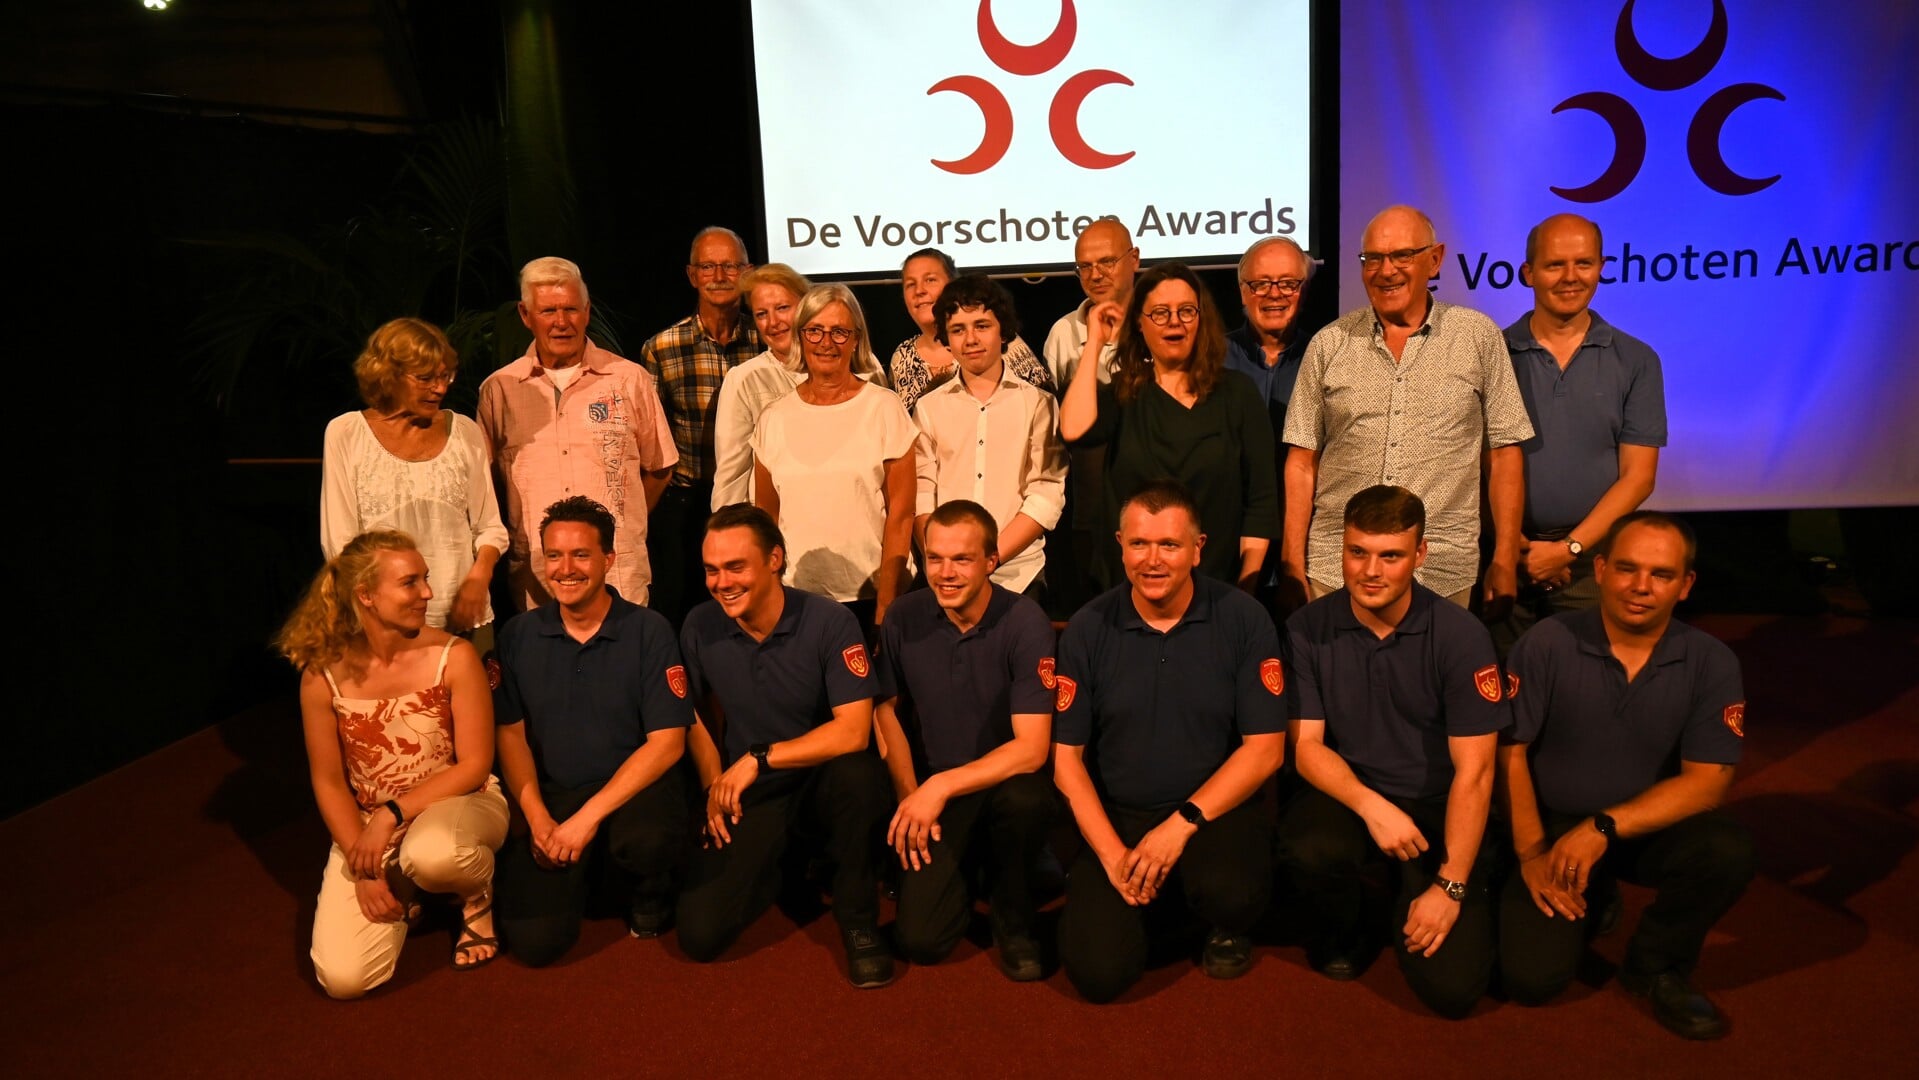 Vorig jaar werden de Voorschoten Awards voor het eerst uitgereikt. De nominaties voor dit jaar gaan binnenkort van start. Foto: PR